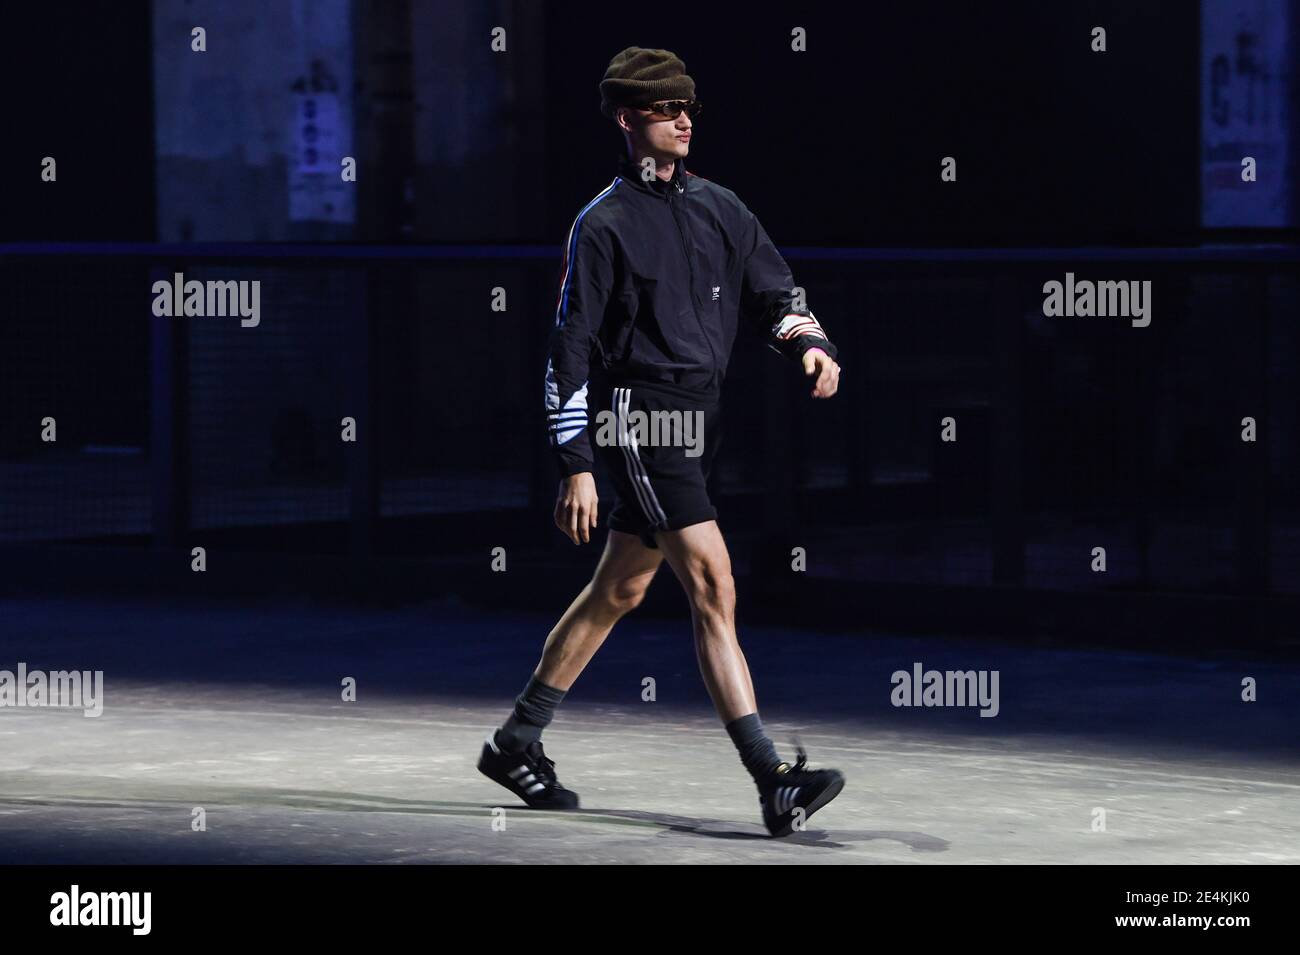 Berlín, Alemania. 23 de enero de 2021. Un modelo presenta una creación de Adidas en la Semana de la Moda Acerca de ti en Berlín. La Semana de la Moda de